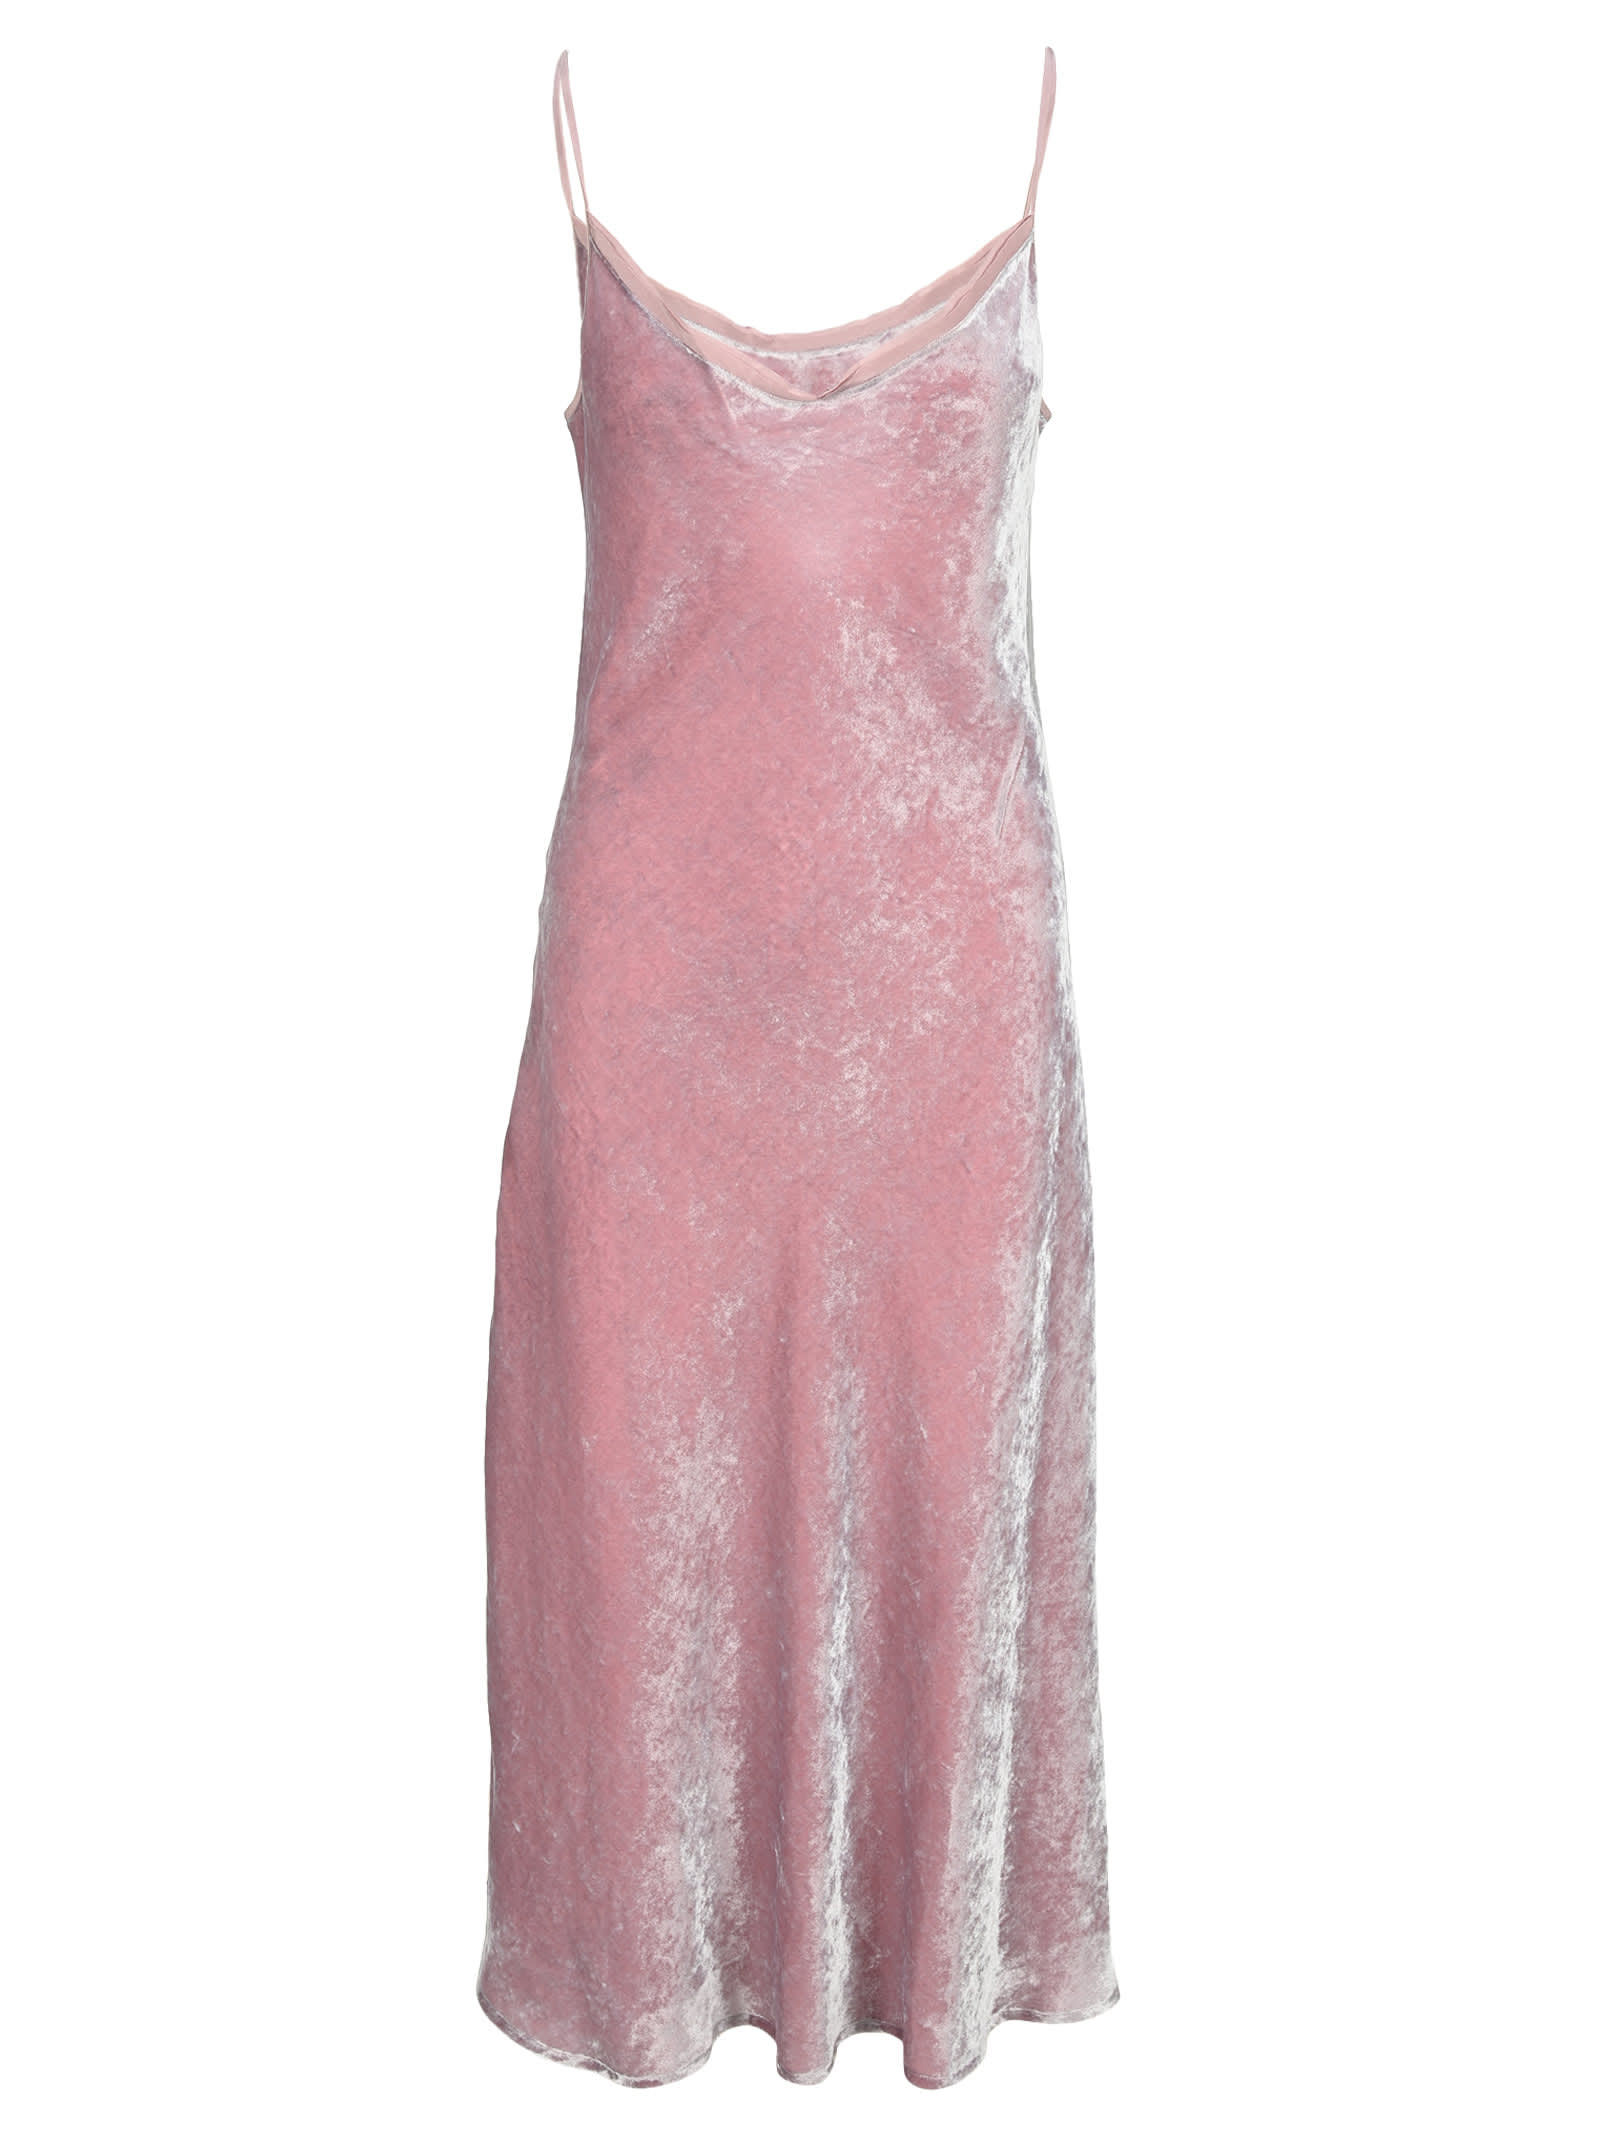 Marc Jacobs Pink Satin Bias Slip Dress